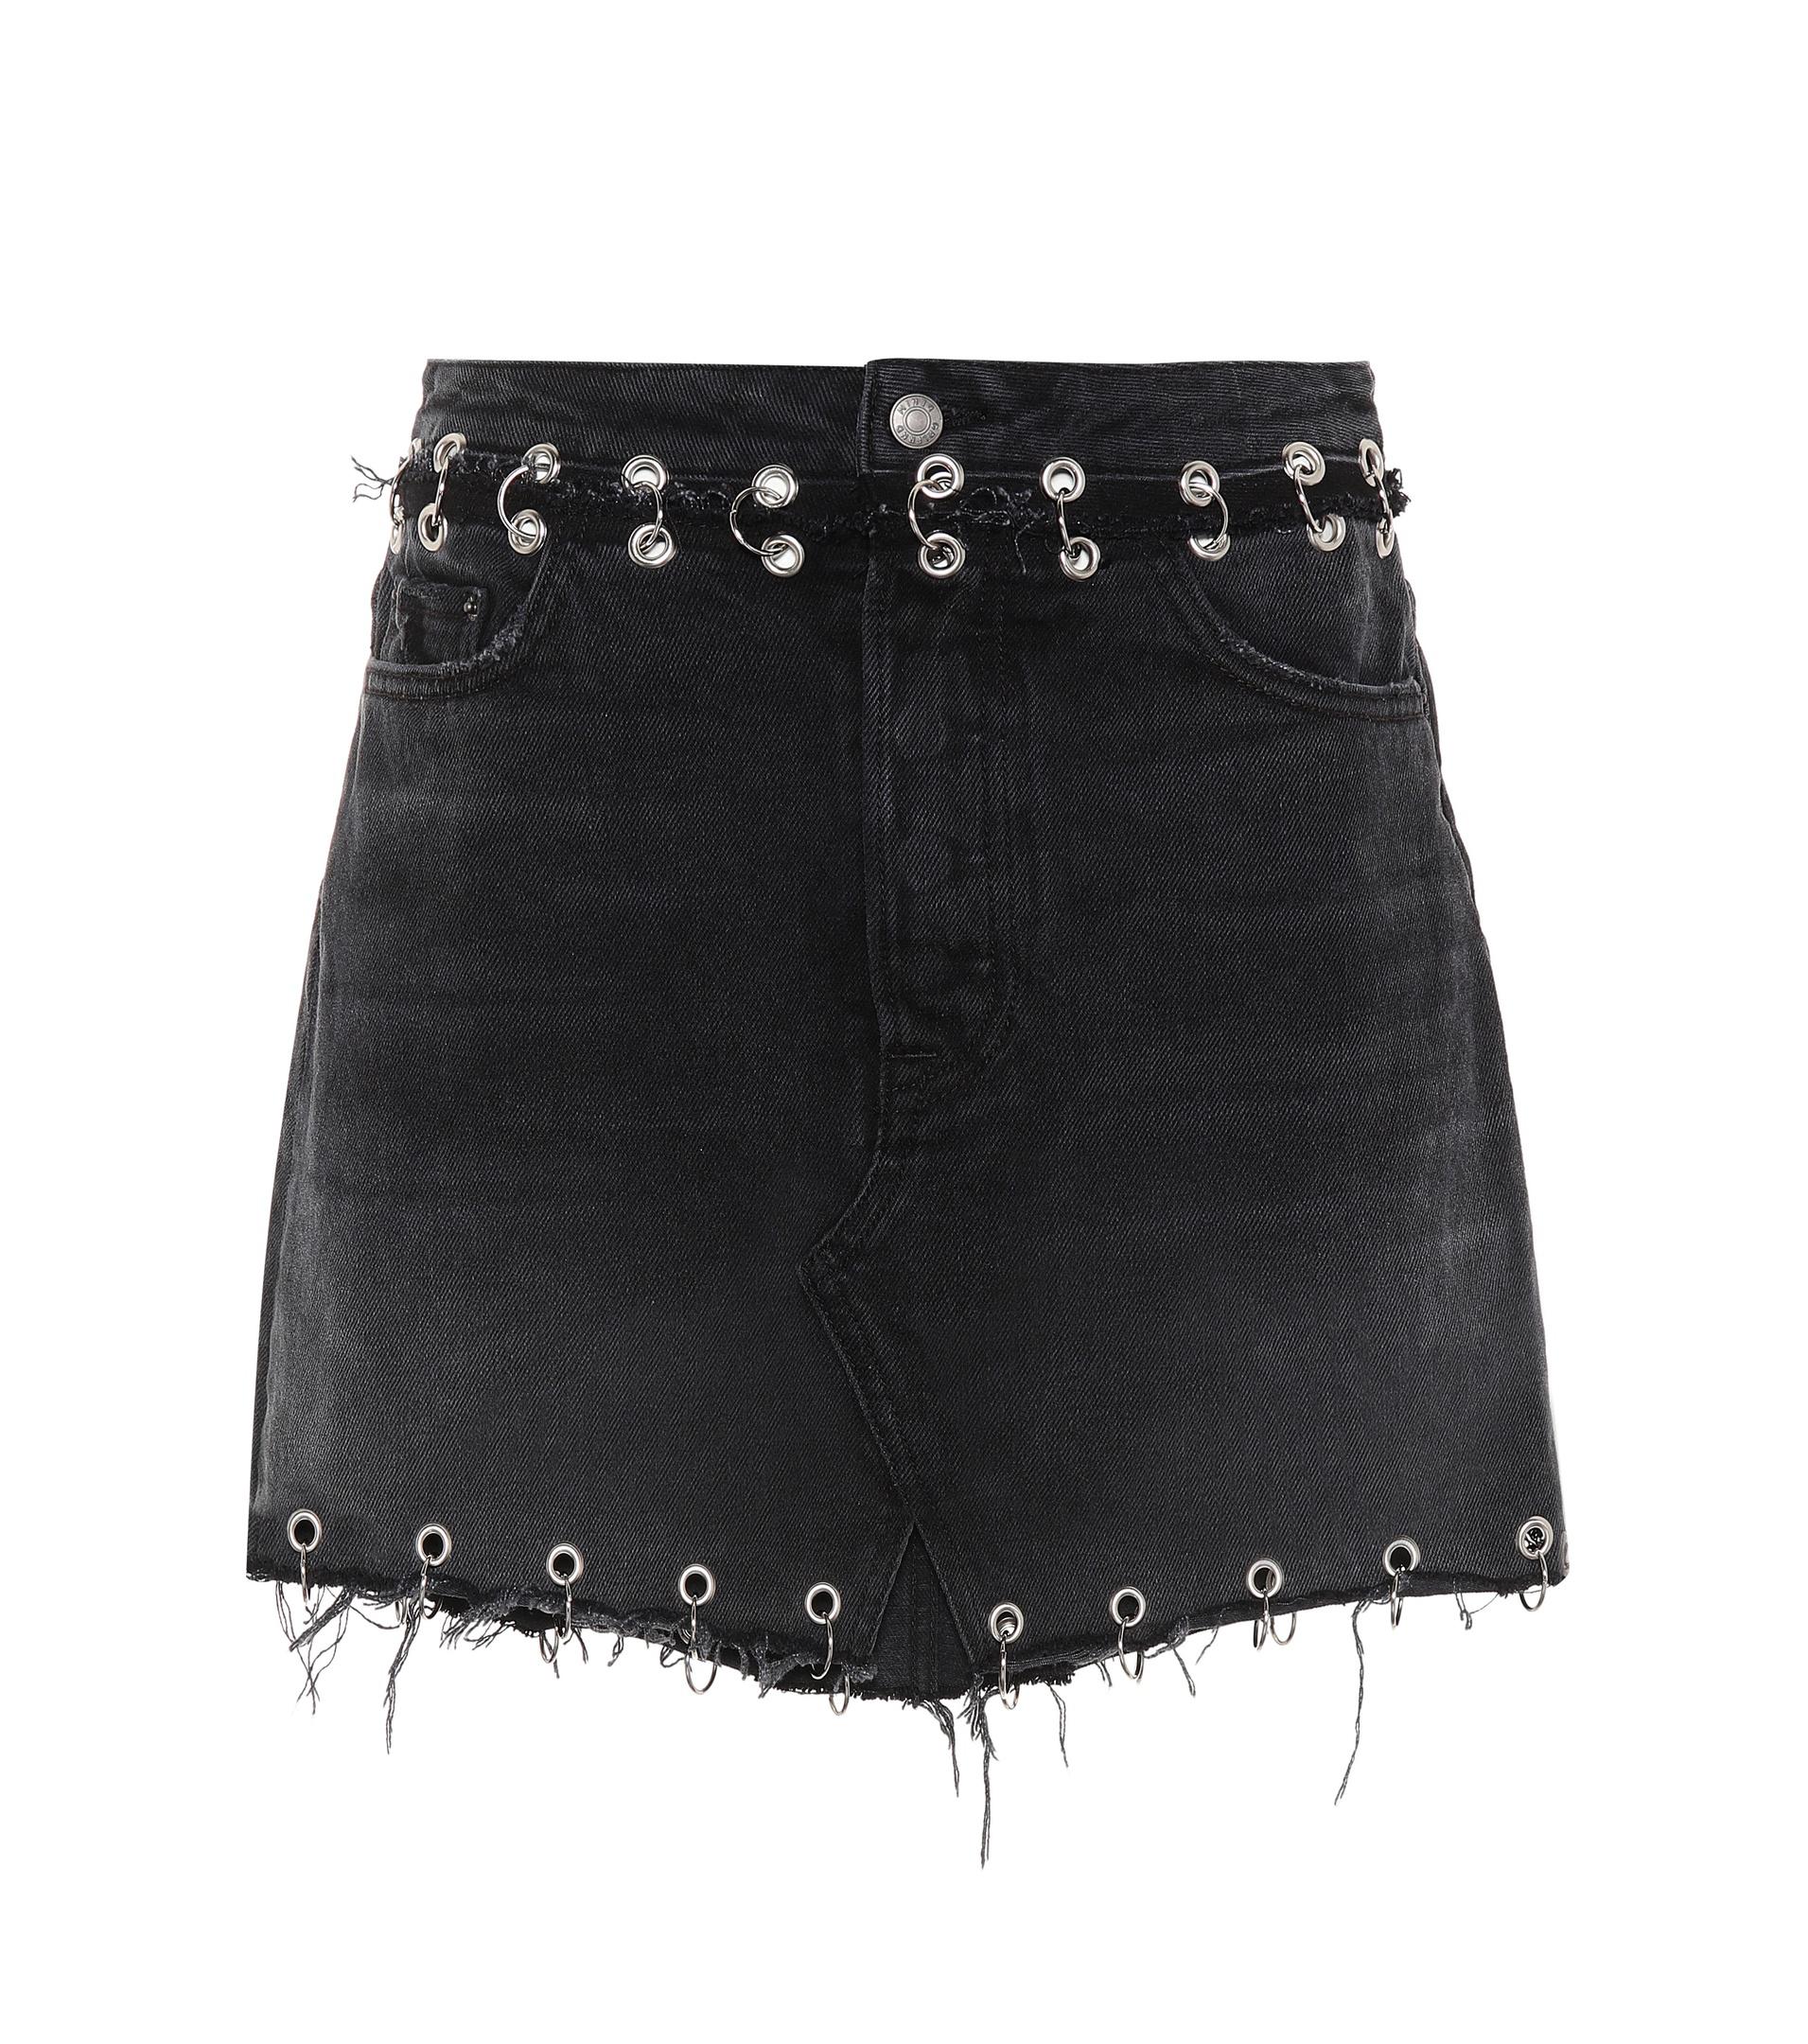 GRLFRND The Milla Embellished Denim Skirt in Black - Lyst